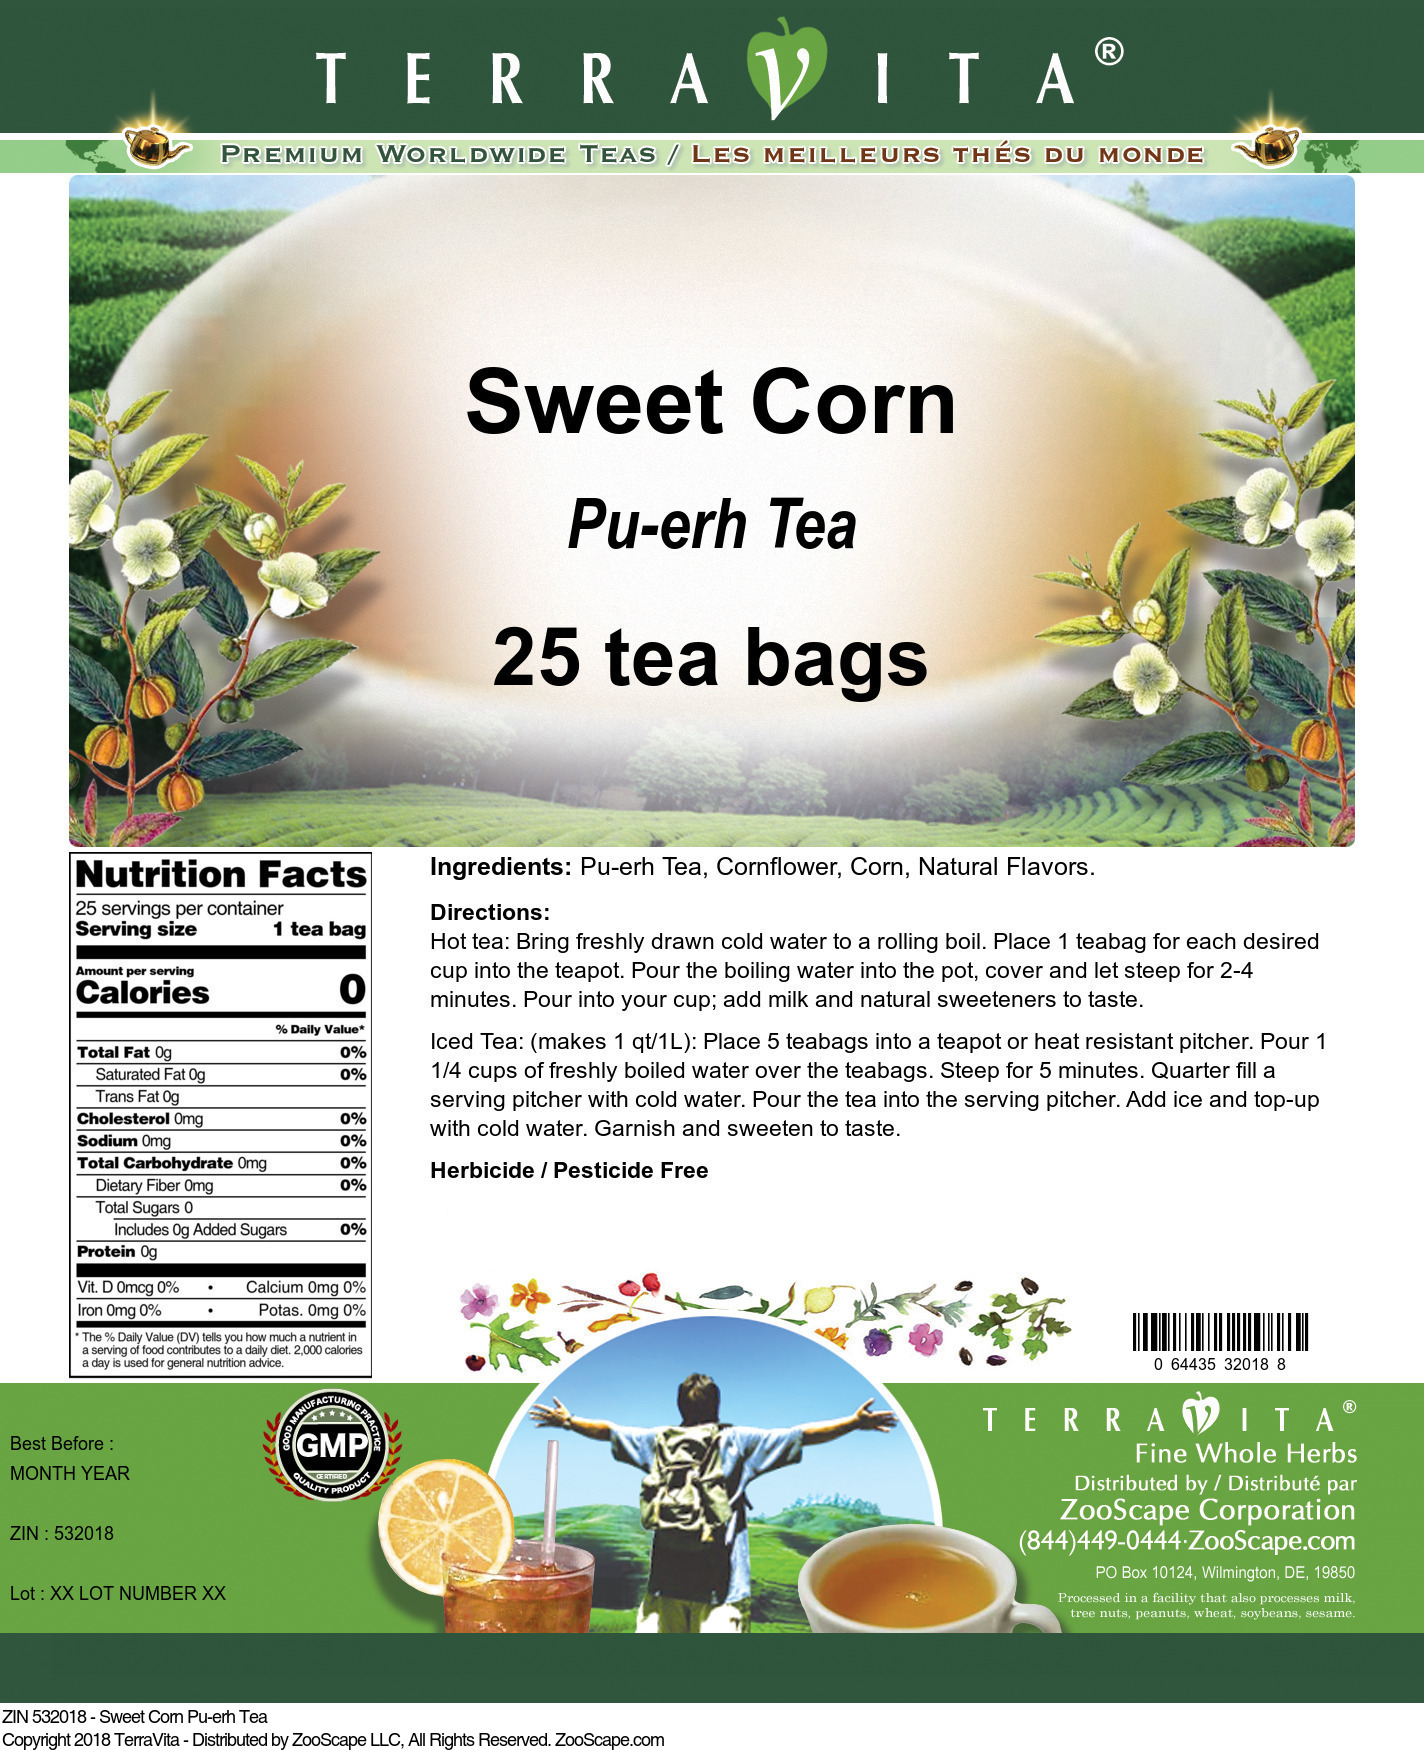 Sweet Corn Pu-erh Tea - Label